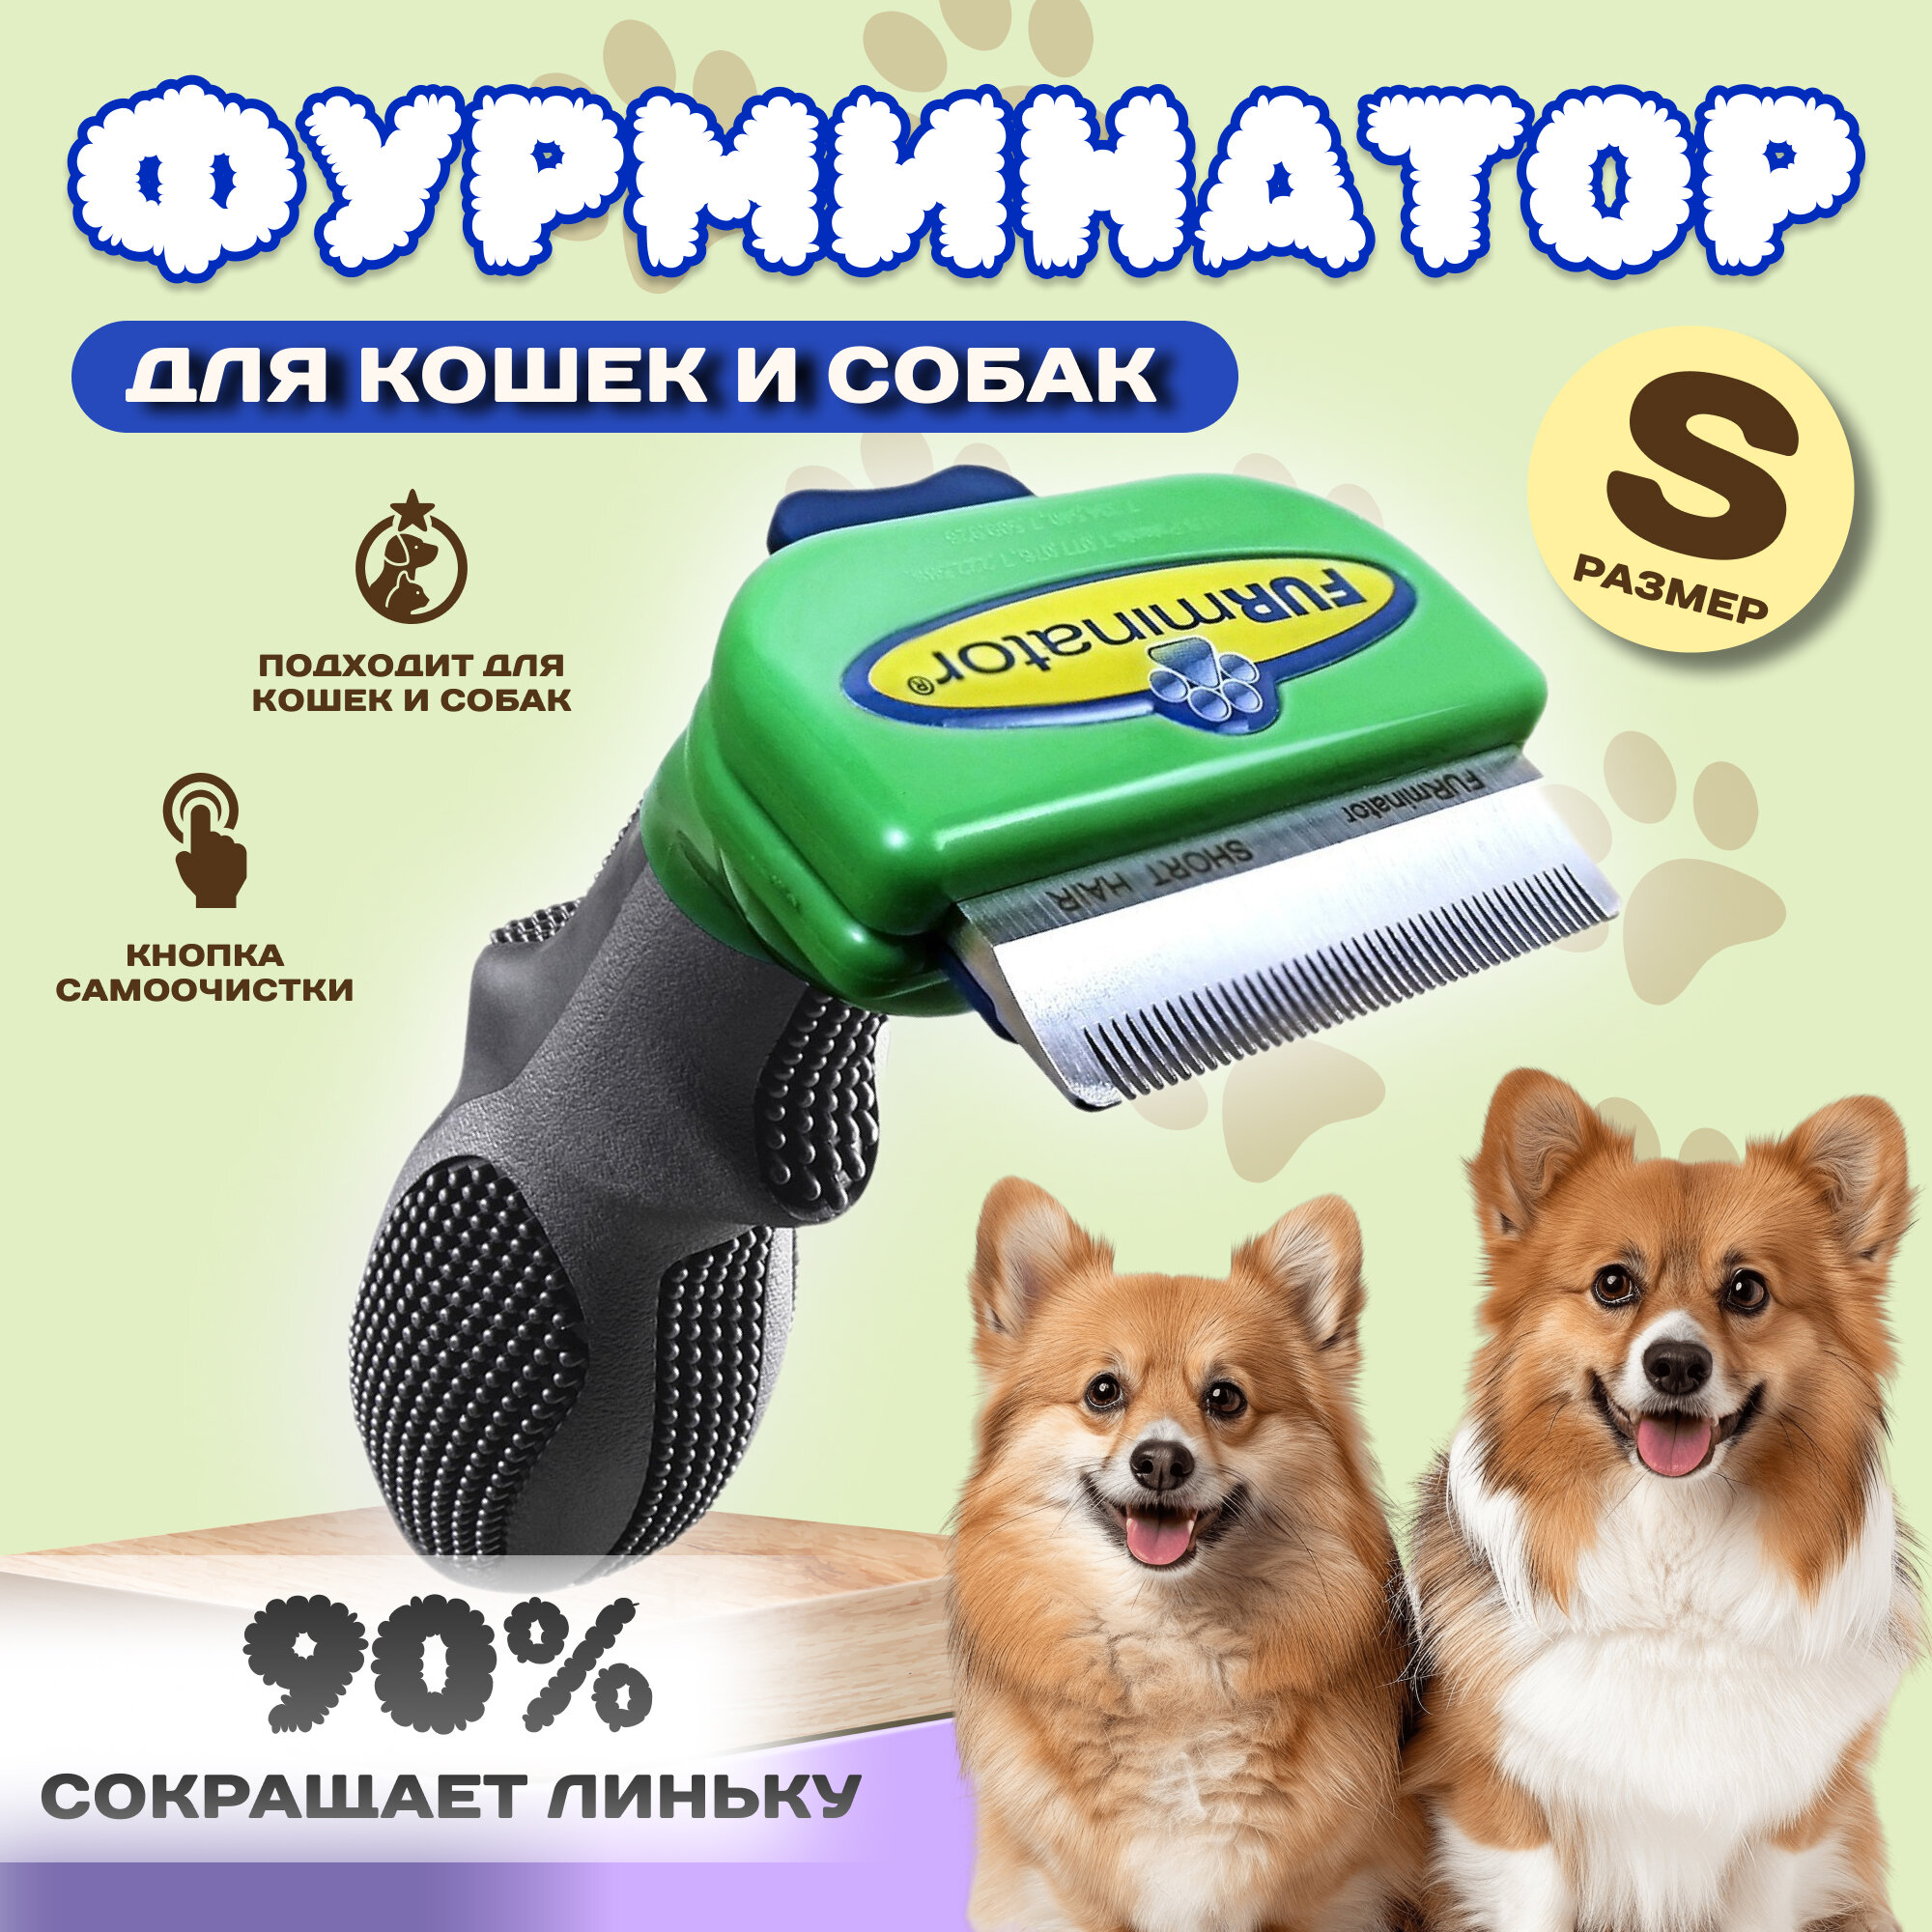 Фурминатор для маленьких собак / Щетка для вычесывания подшерстка (дешеддер, фурминатор) Furminator у собак